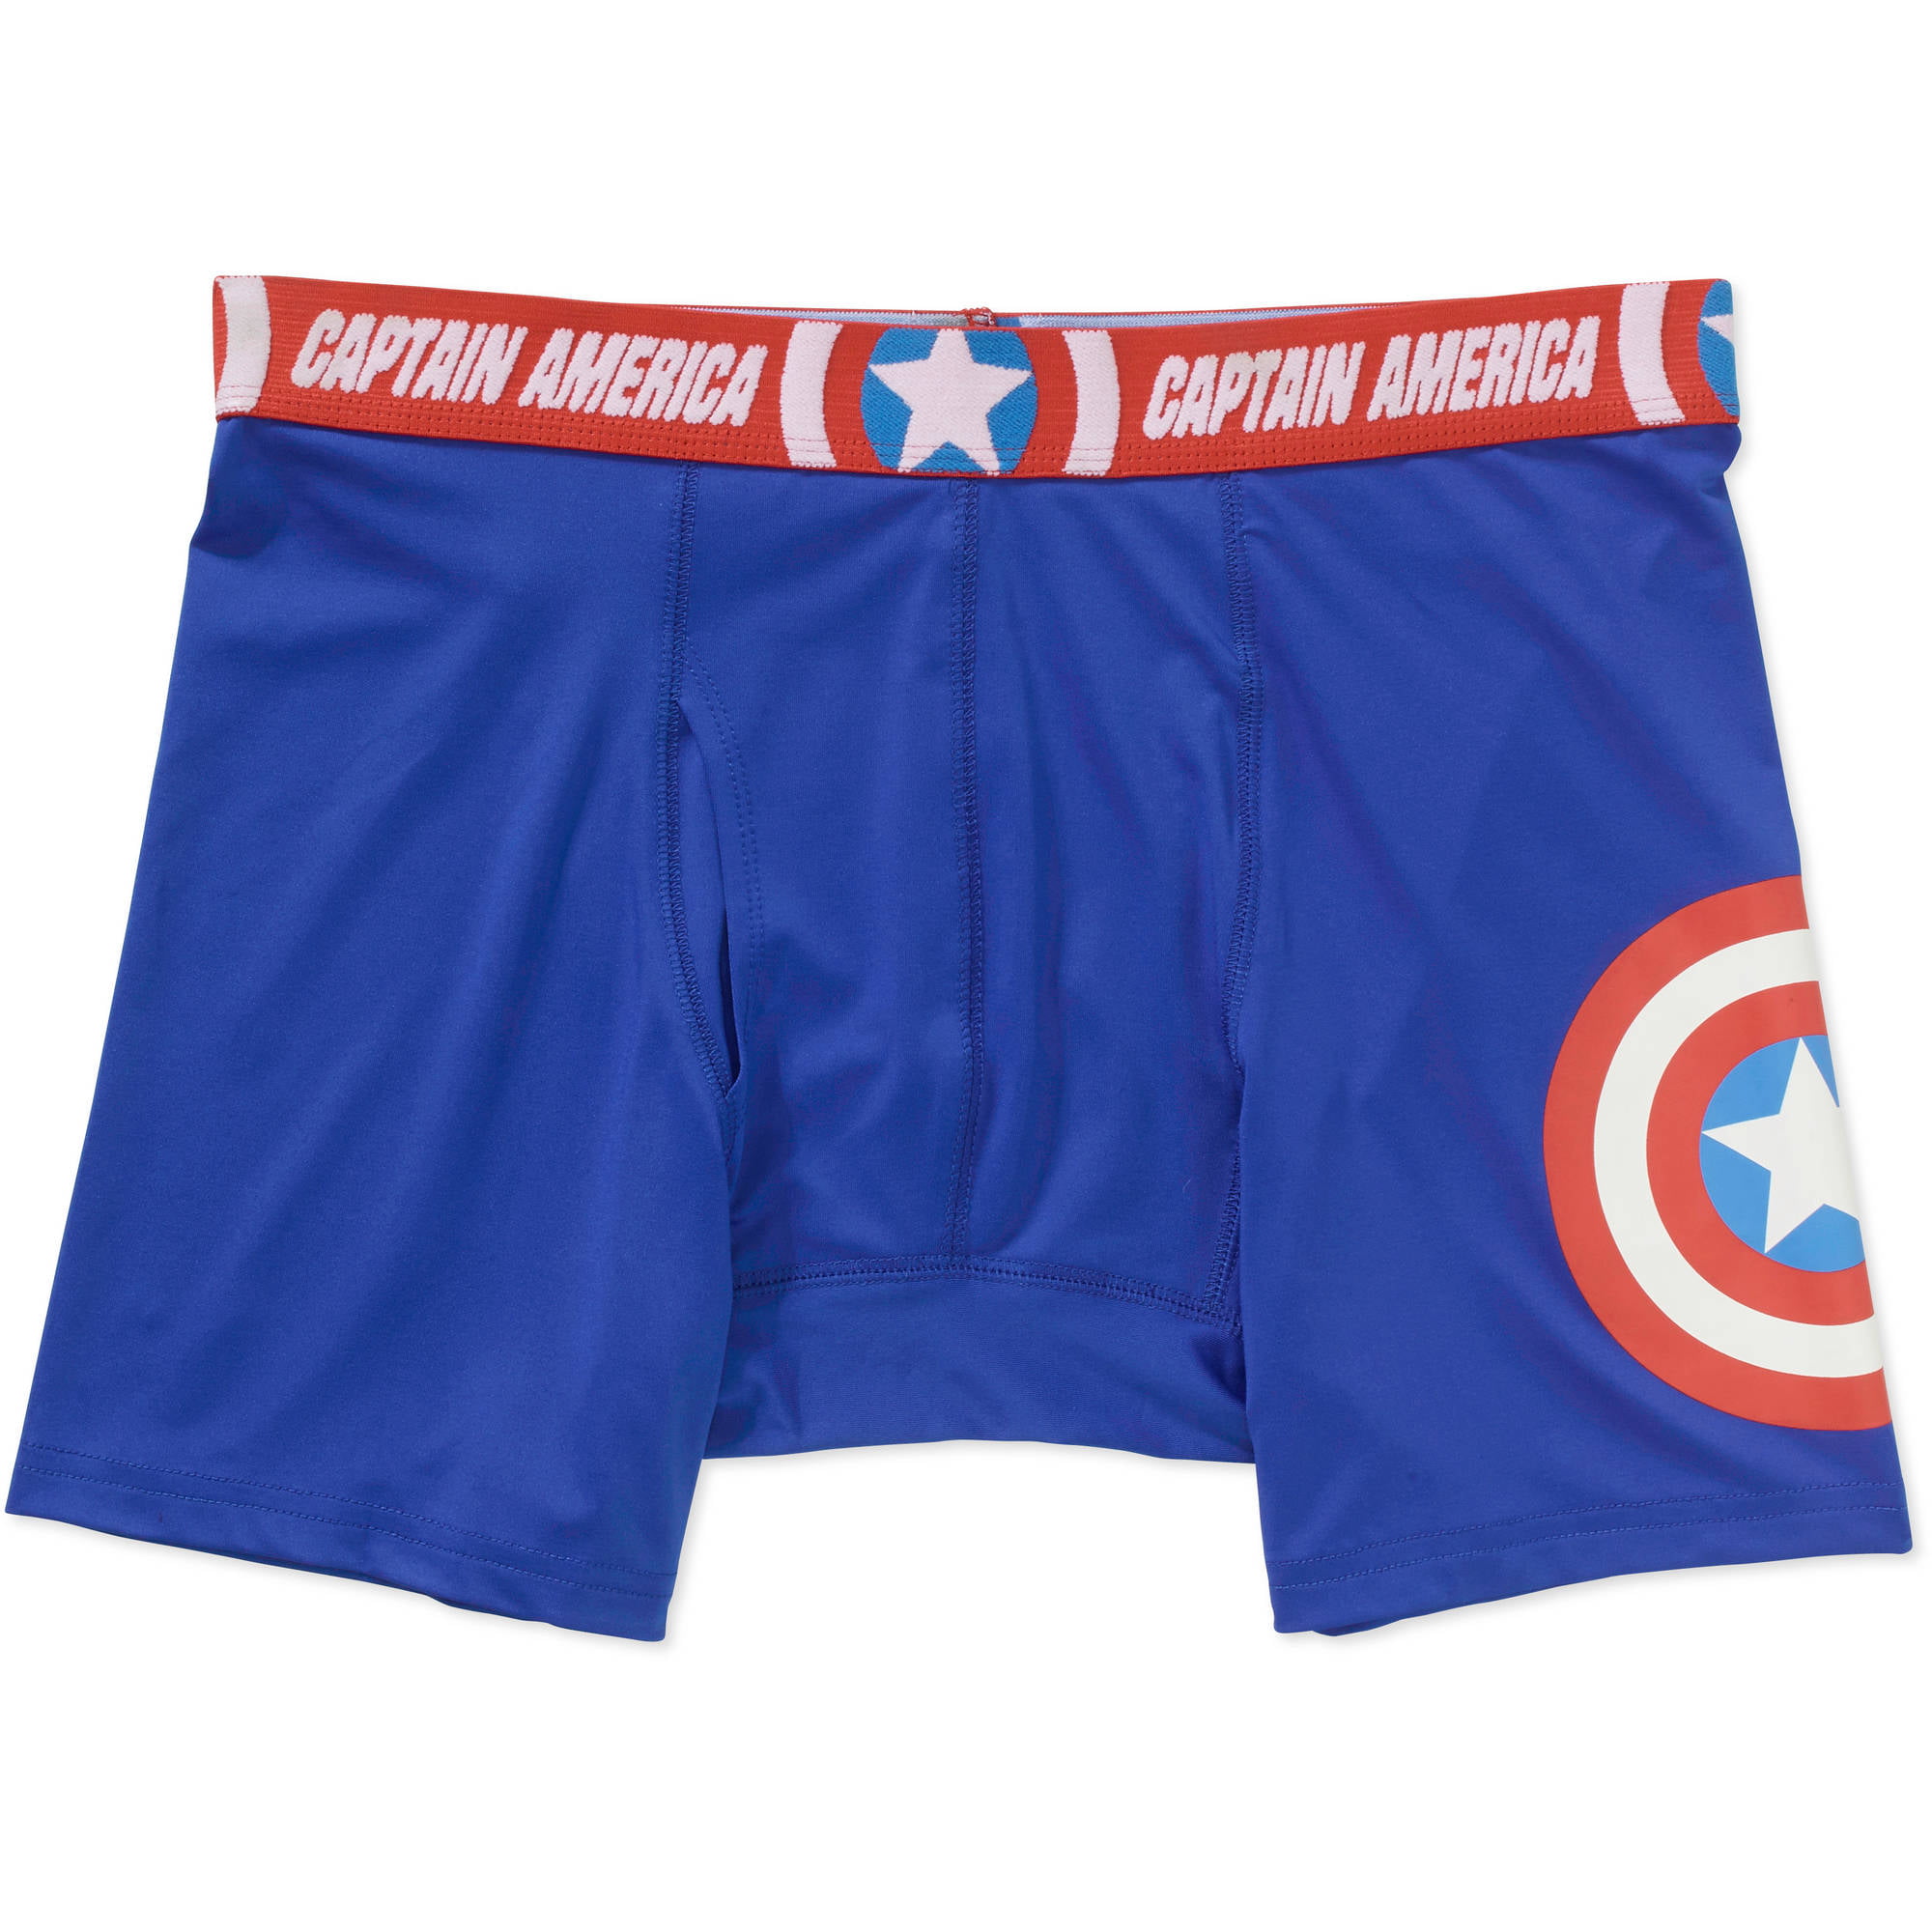 Marvel Captain America Men's Performance Knit Boxer Briefs by Aeropostale –  Marvelous Merchandise Online